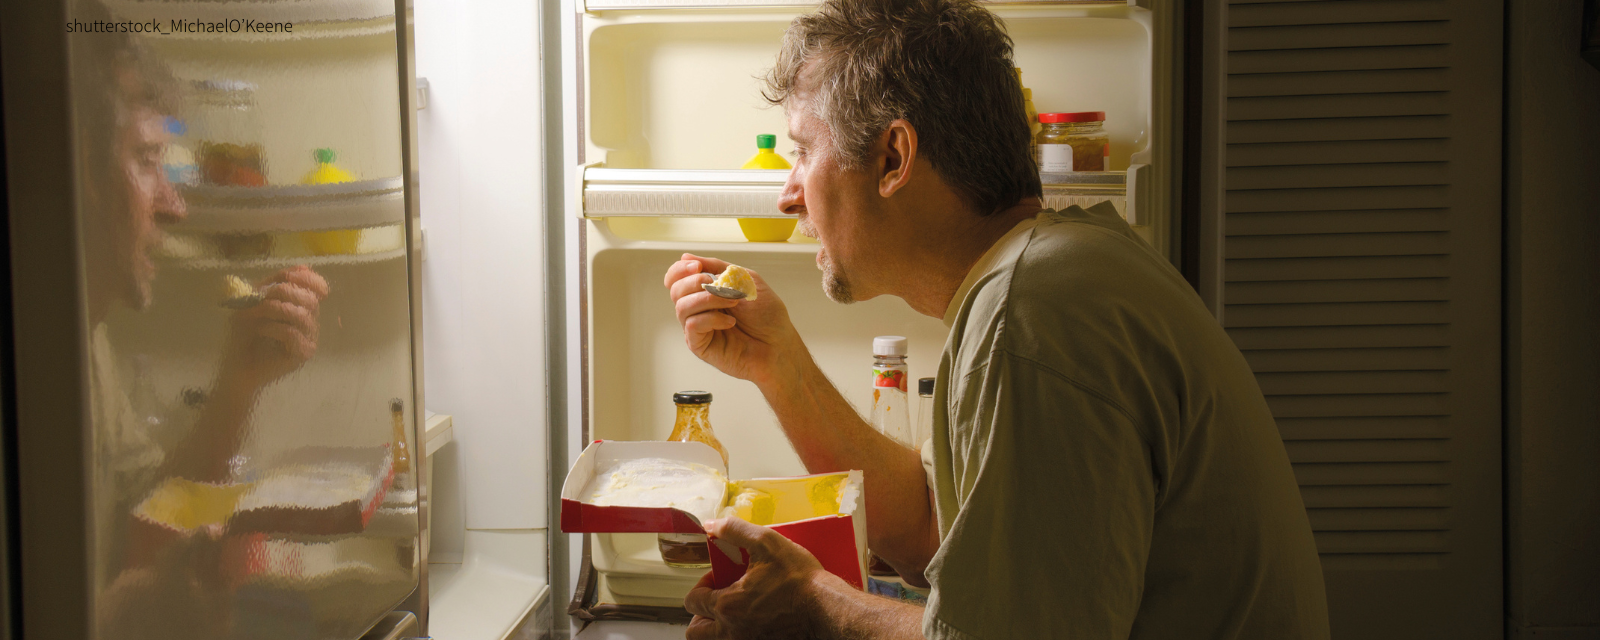 Mann sitzt vor dem Kühlschrank und isst etwas.